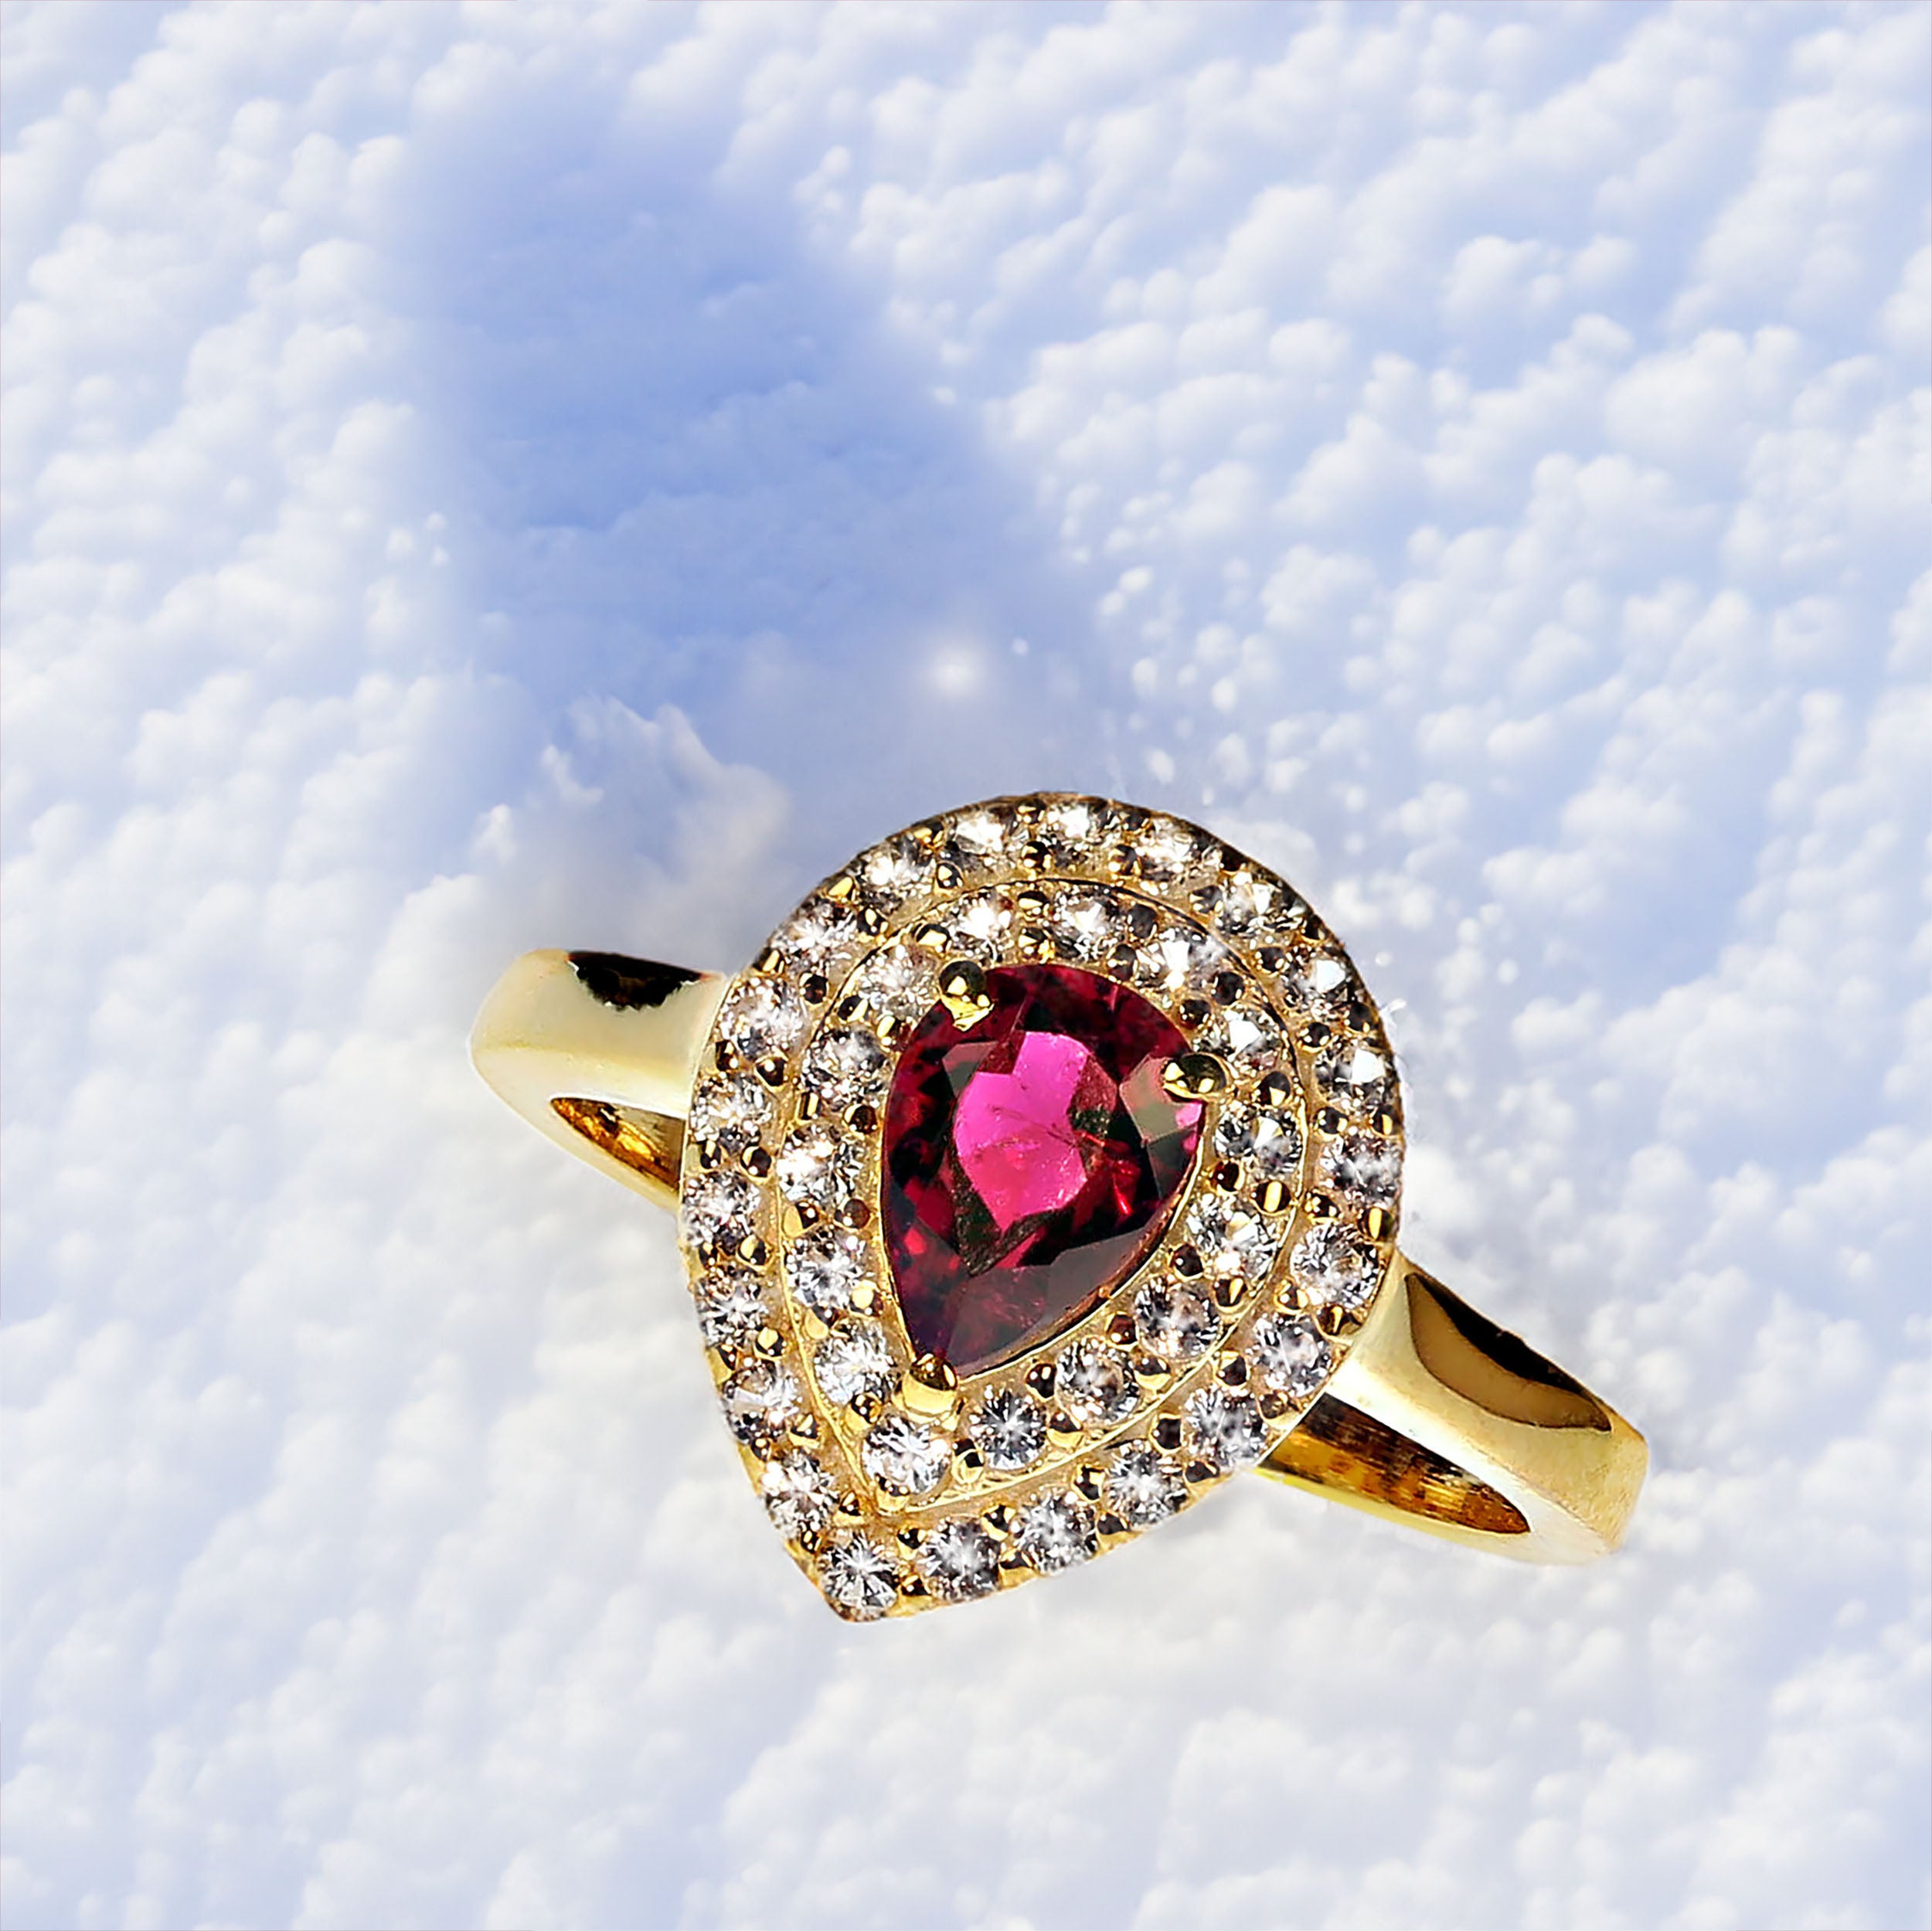 Atemberaubender rötlich-rosa Rubelit mit zwei Einfassungen aus funkelnden weißen Saphiren, alle in Goldrhodium über Sterlingsilber gefasst.  Dieser wunderbare, einzigartige Ring wird Ihr Lieblingsring zum Abendessen sein.  Der Rubelit von 0,89 ct.